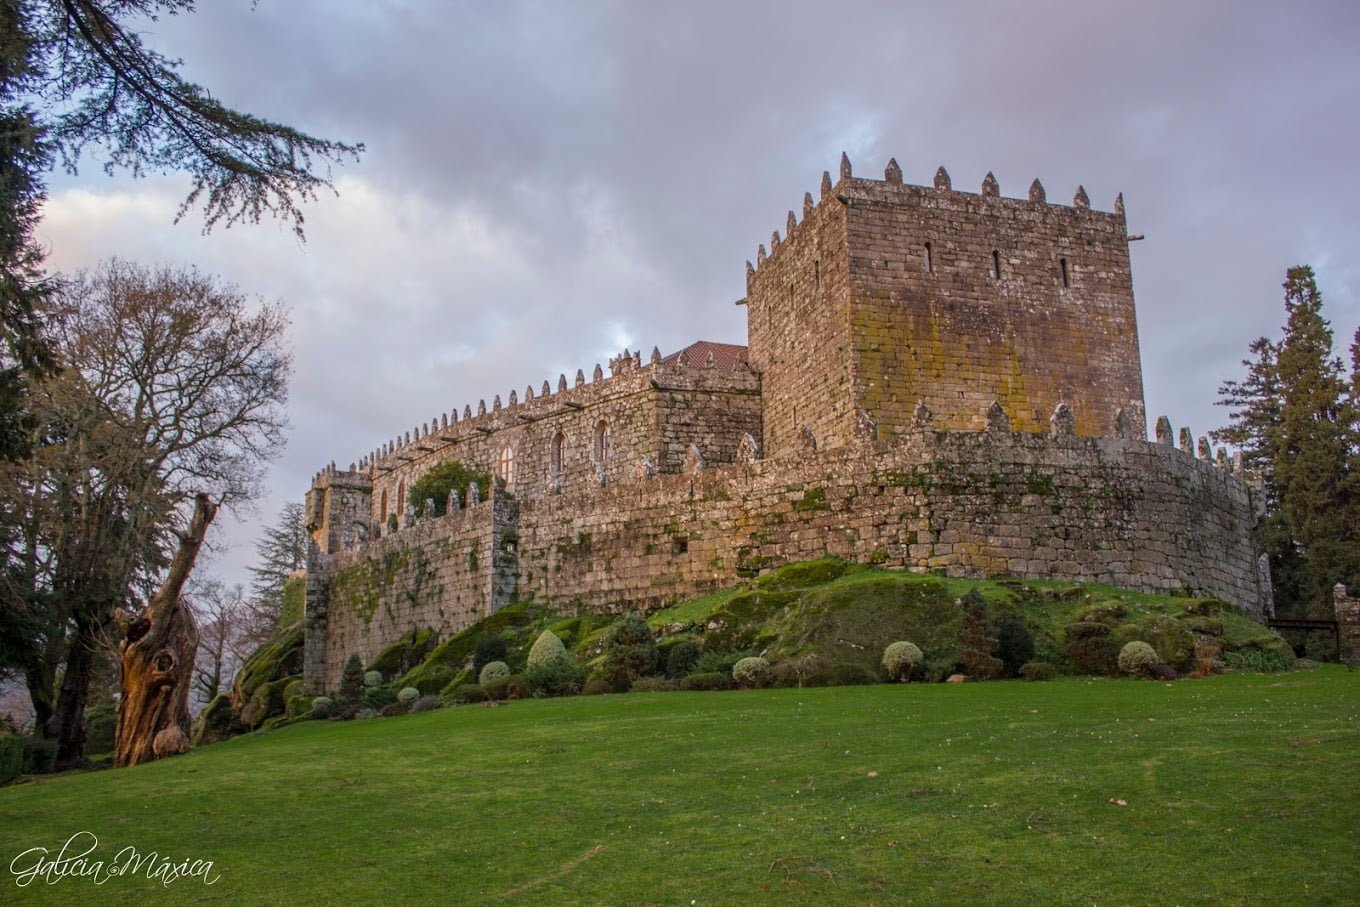 Castillo de Soutomaior